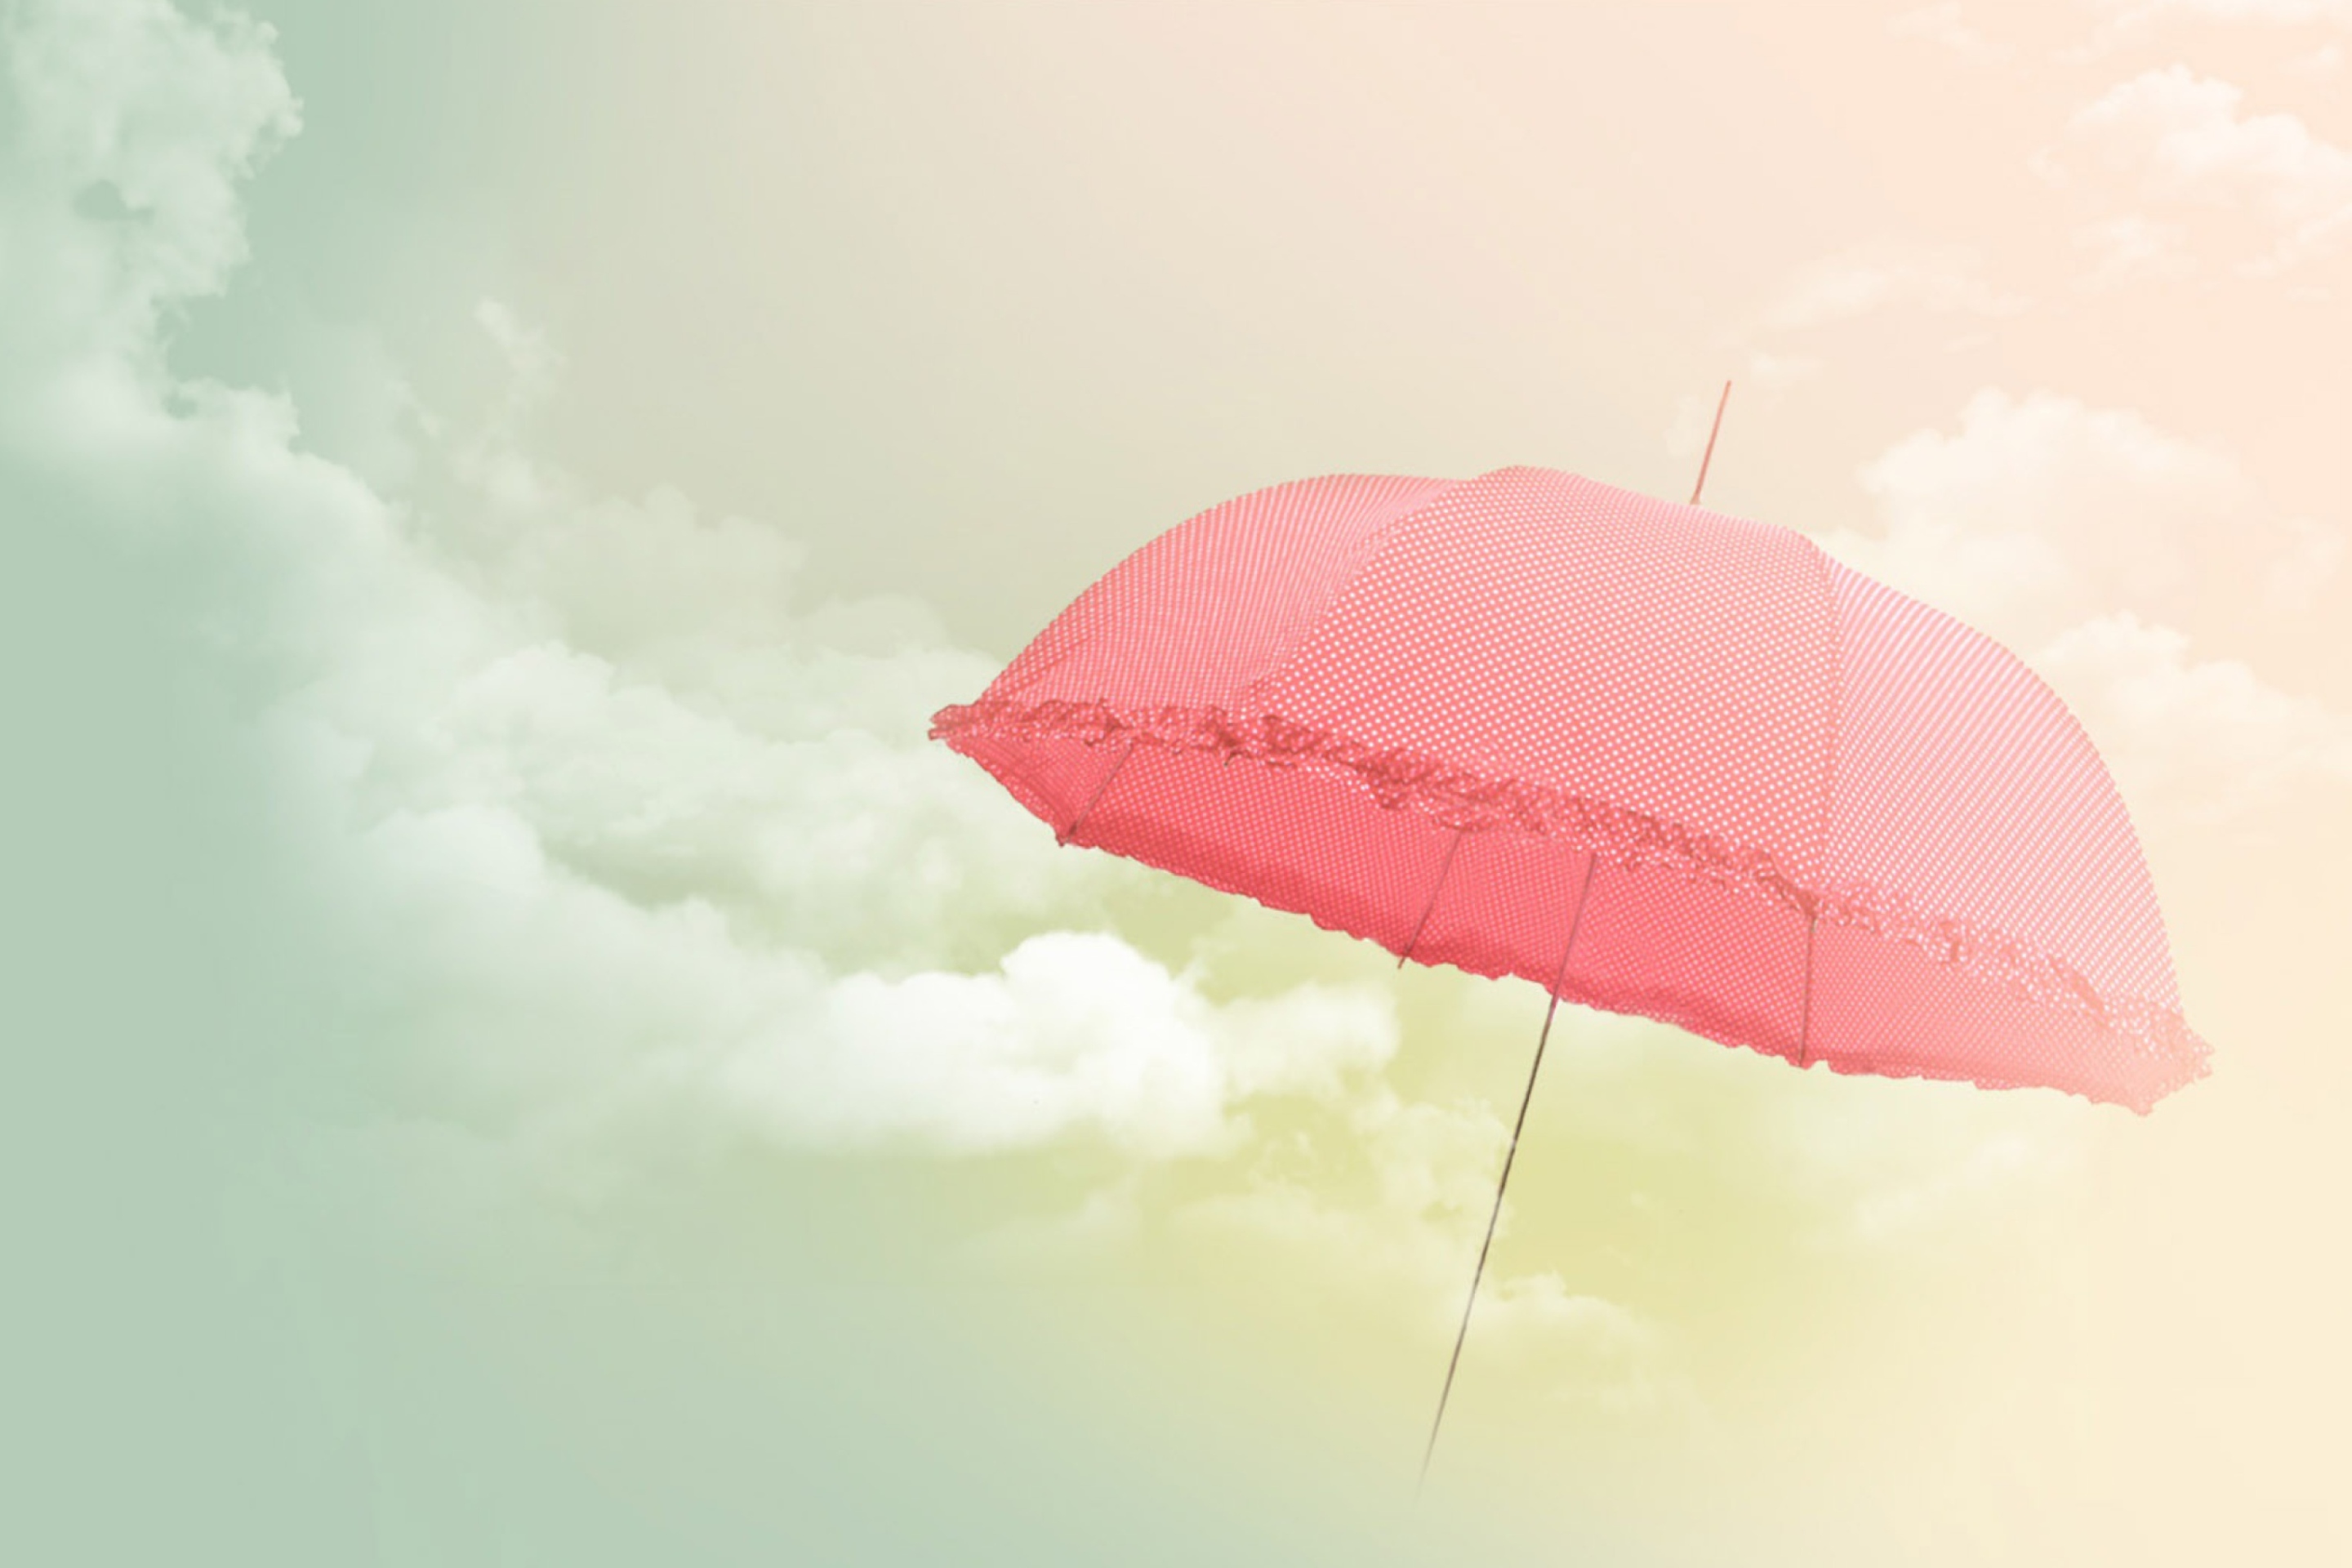 Обои зонтика. Зонтик. Фон для зонта. Красивый летающий зонтик. Розовый зонт на белом фоне.